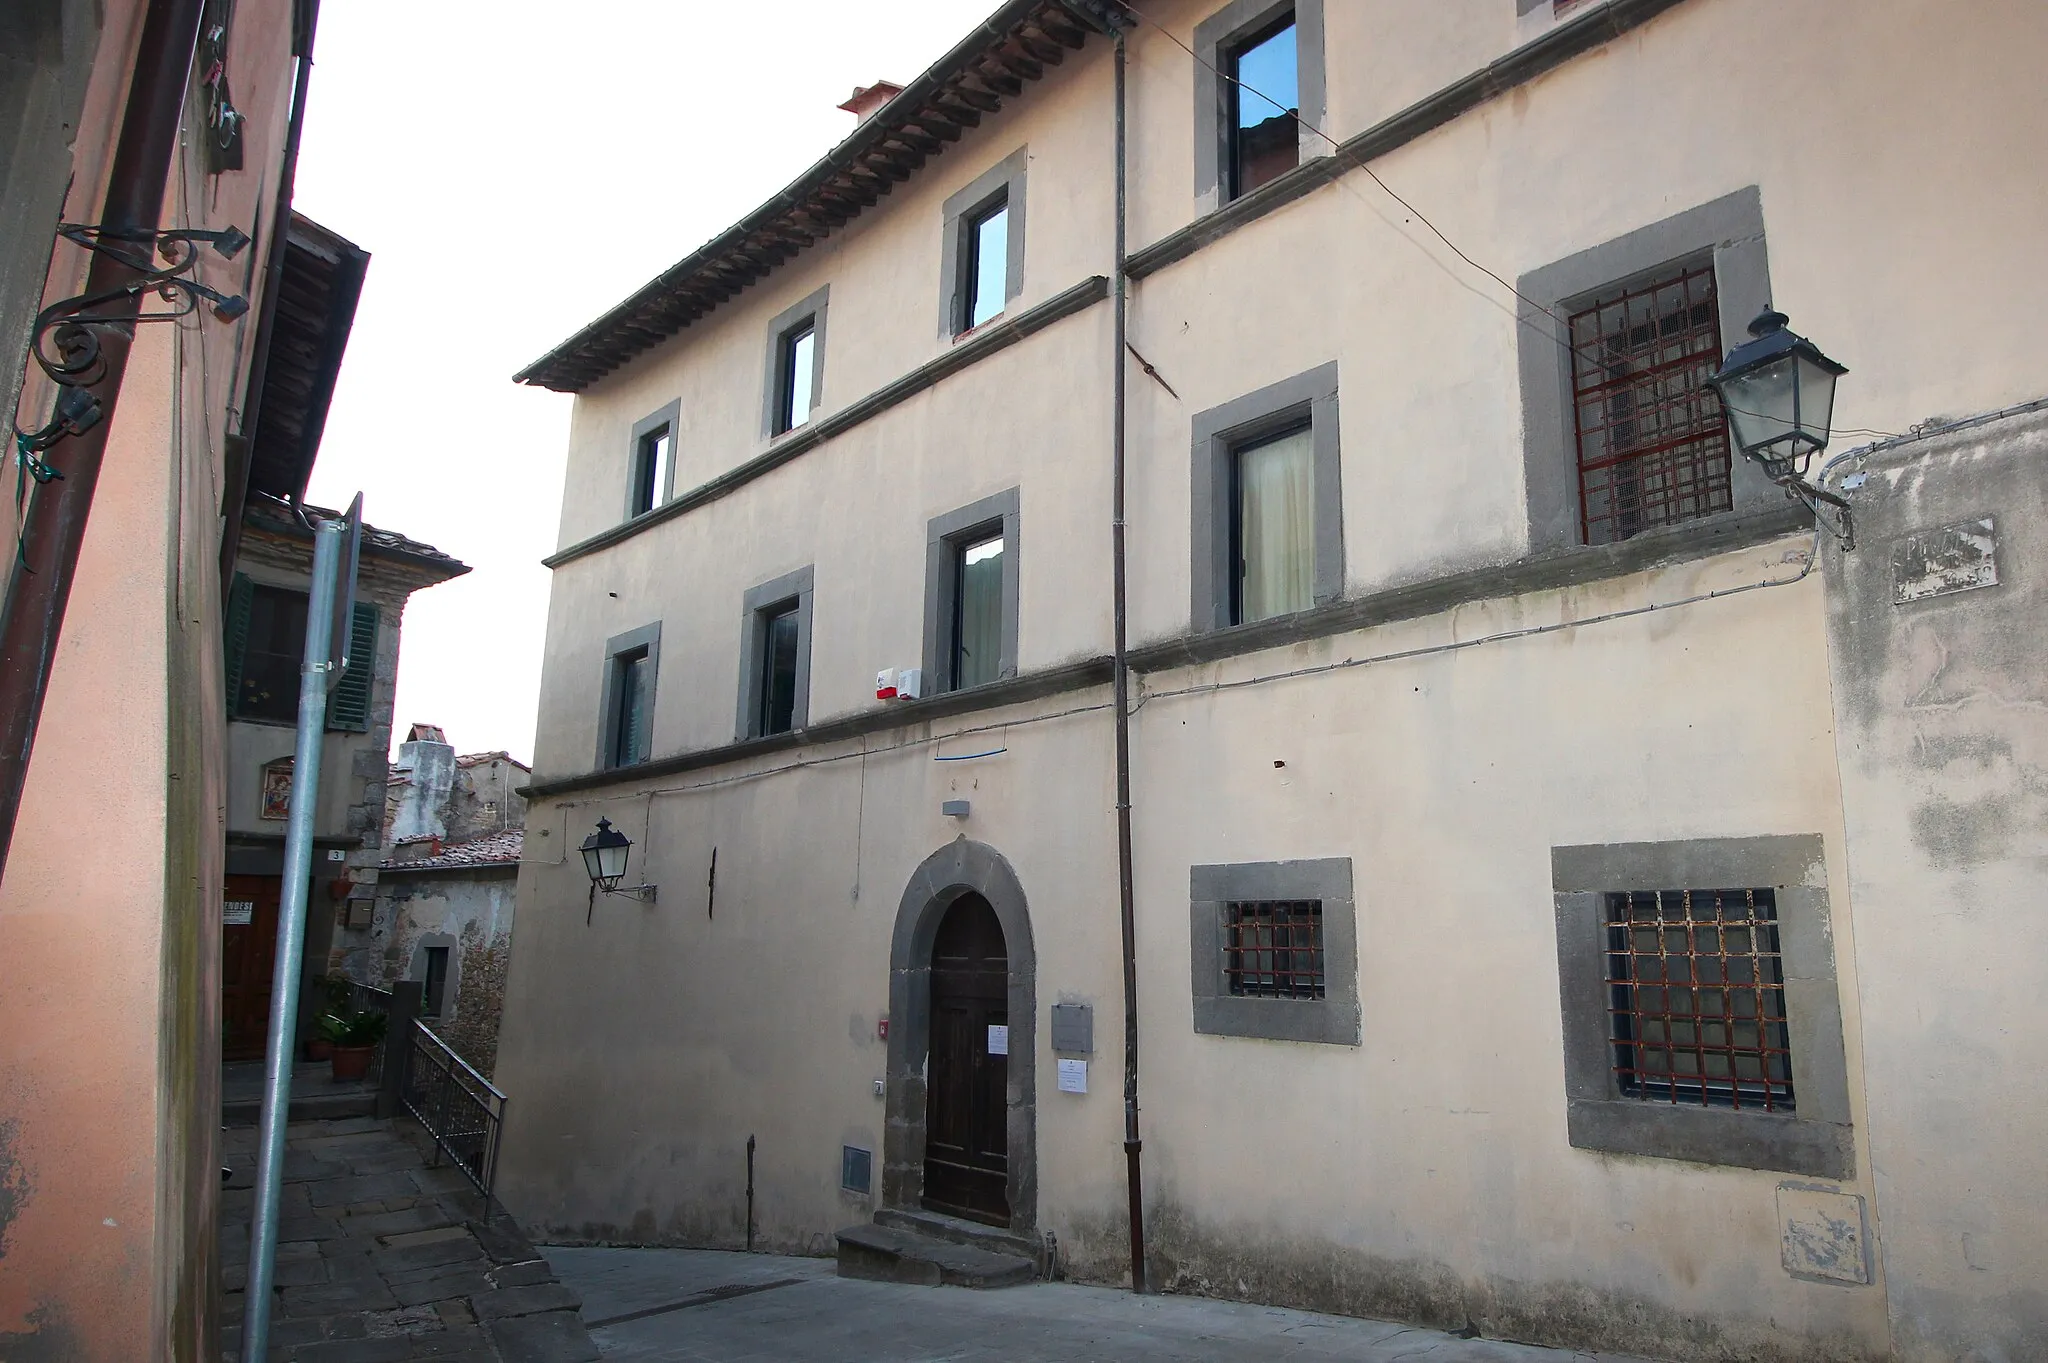 Photo showing: Palazzo Pretorio, Palace in Scansano, Province of Grosseto, Tuscany, Italy, with the museum Museo archeologico e della vite e del vino